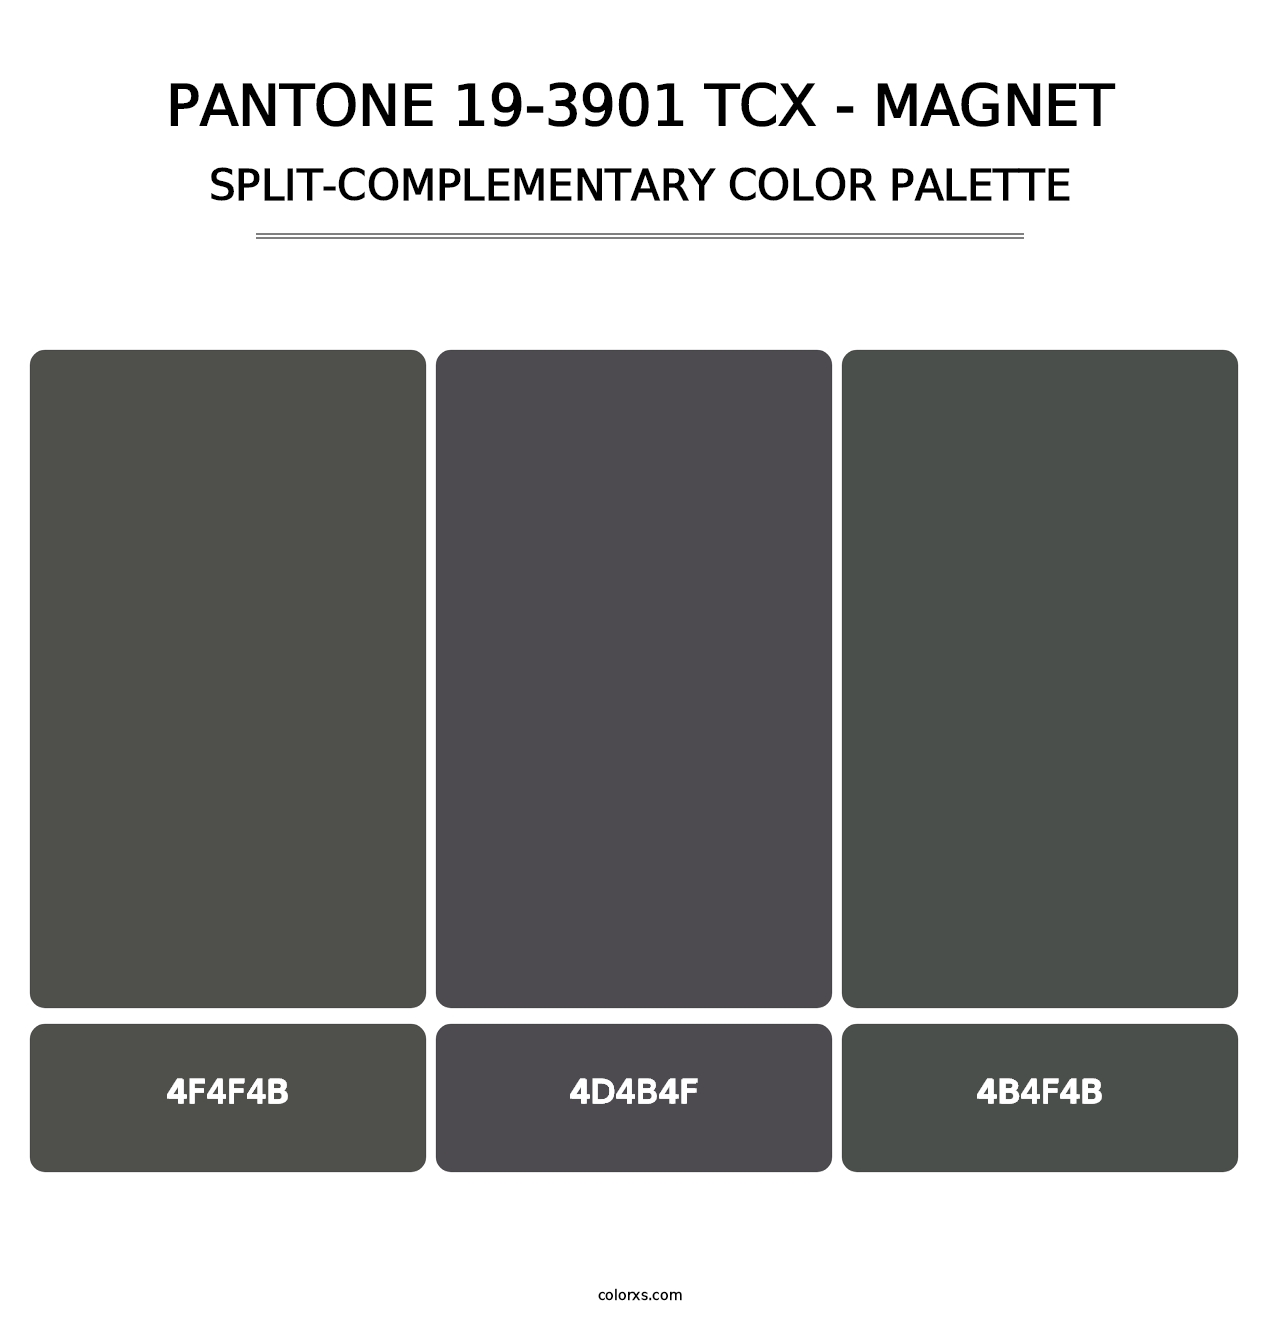 PANTONE 19-3901 TCX - Magnet - Split-Complementary Color Palette